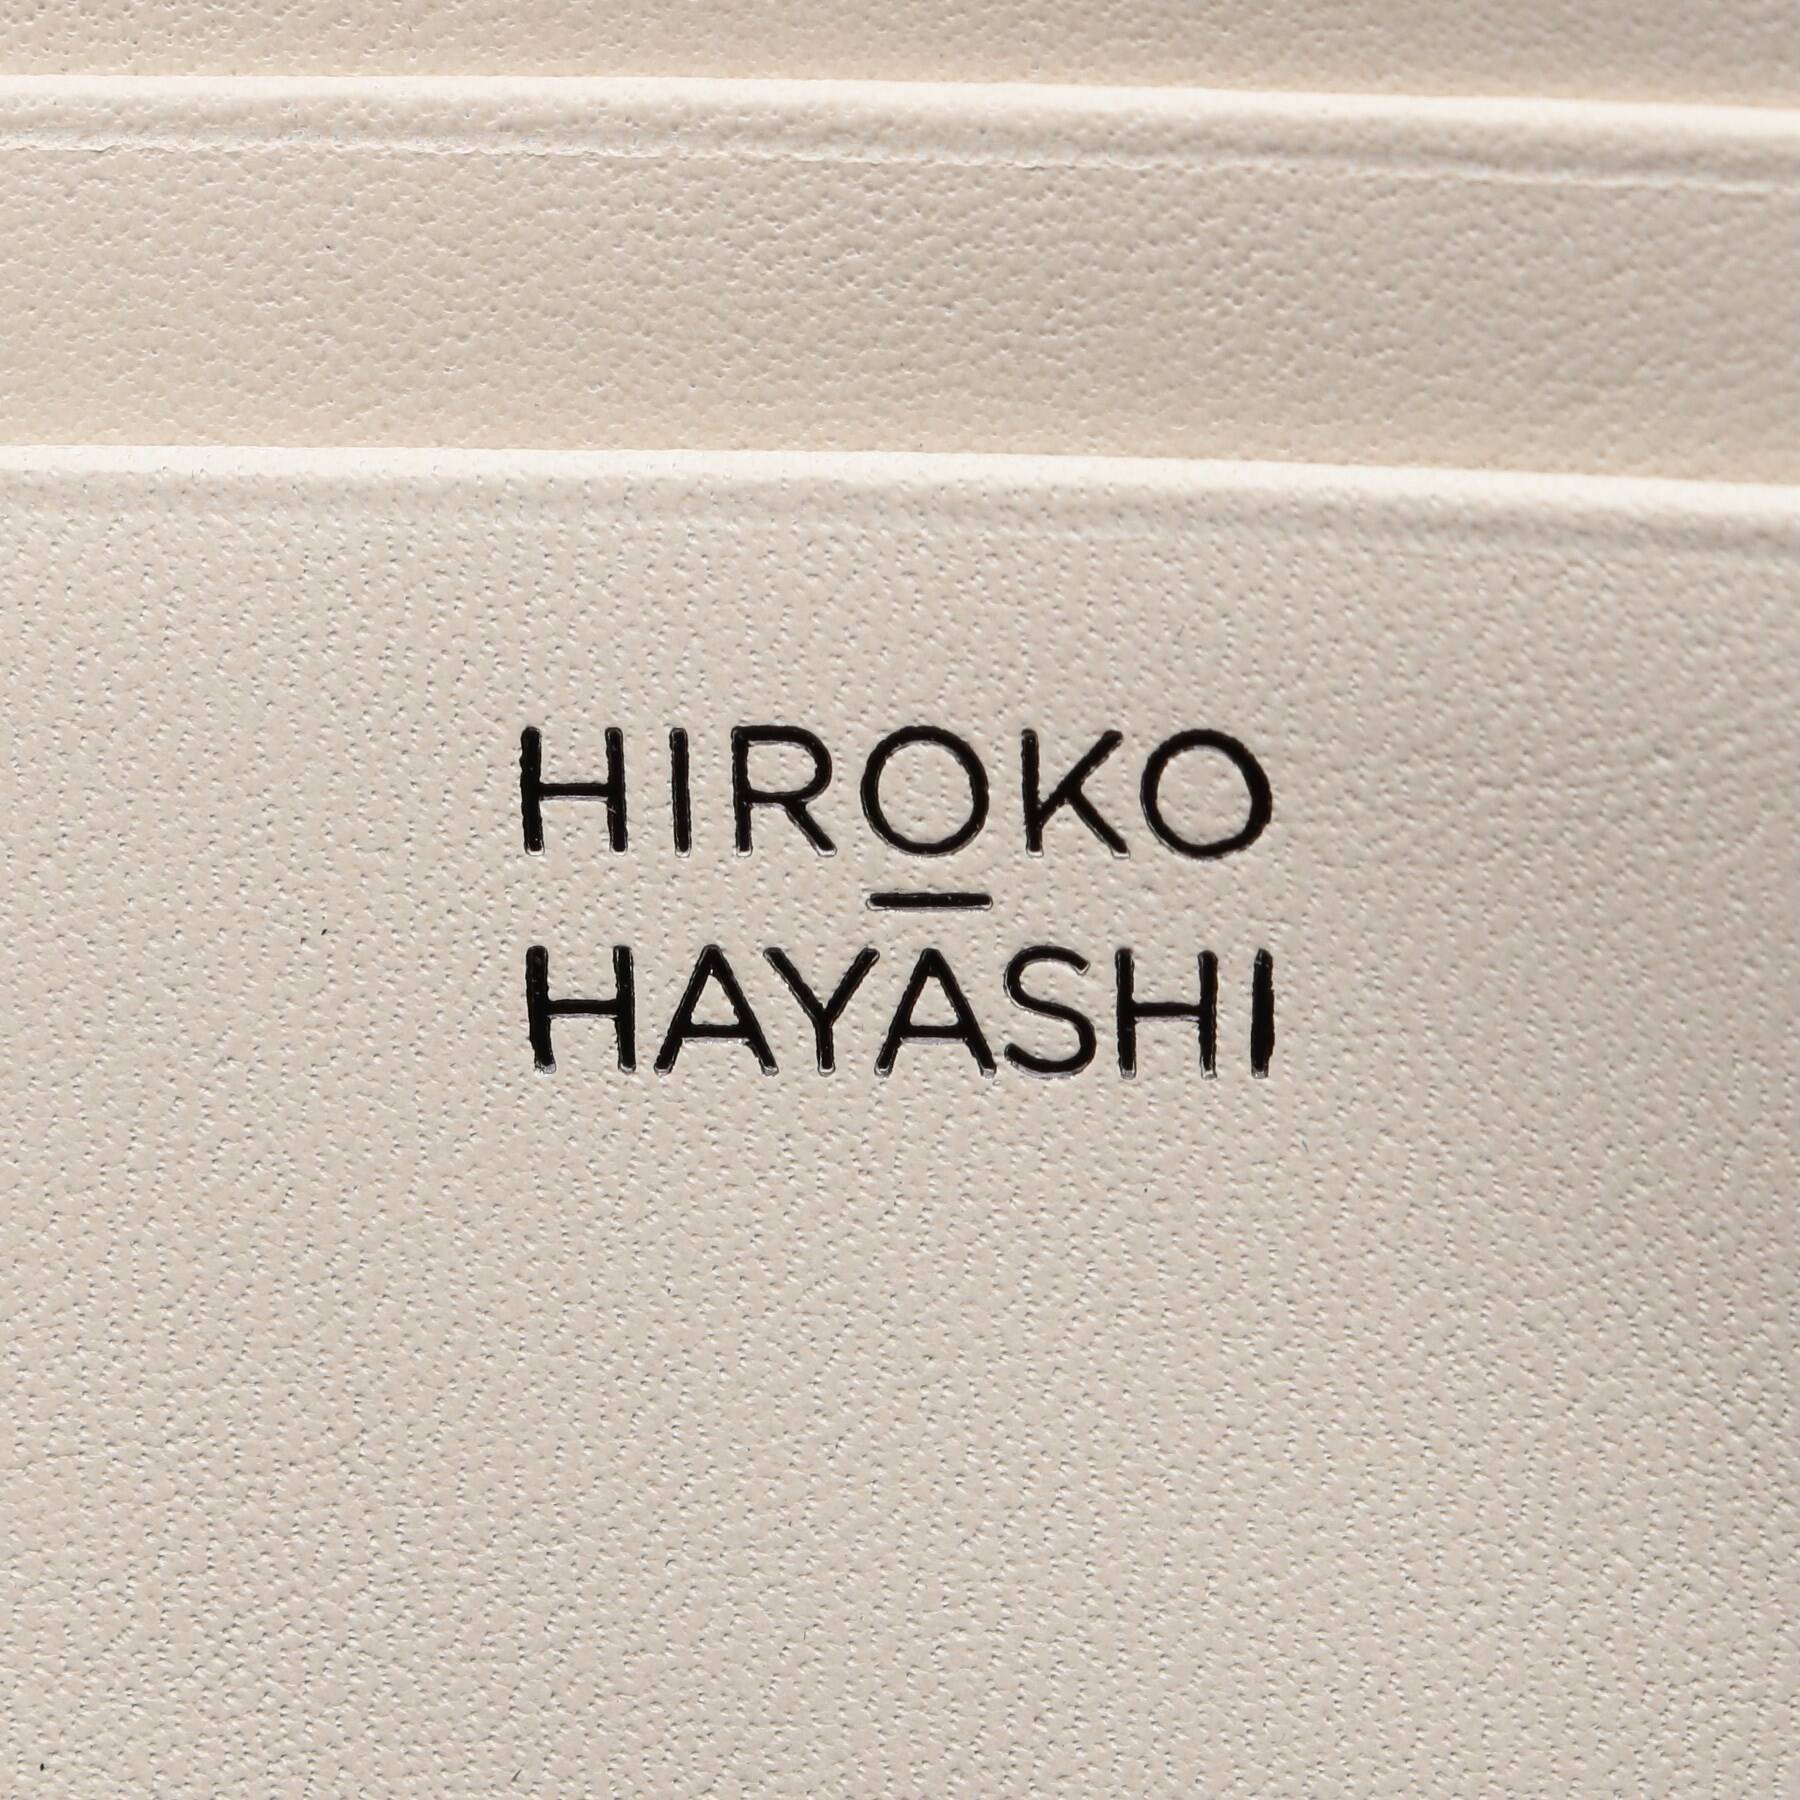 COLOSSEO(コロッセオ)長財布|HIROKO HAYASHI(ヒロコ ハヤシ)の通販